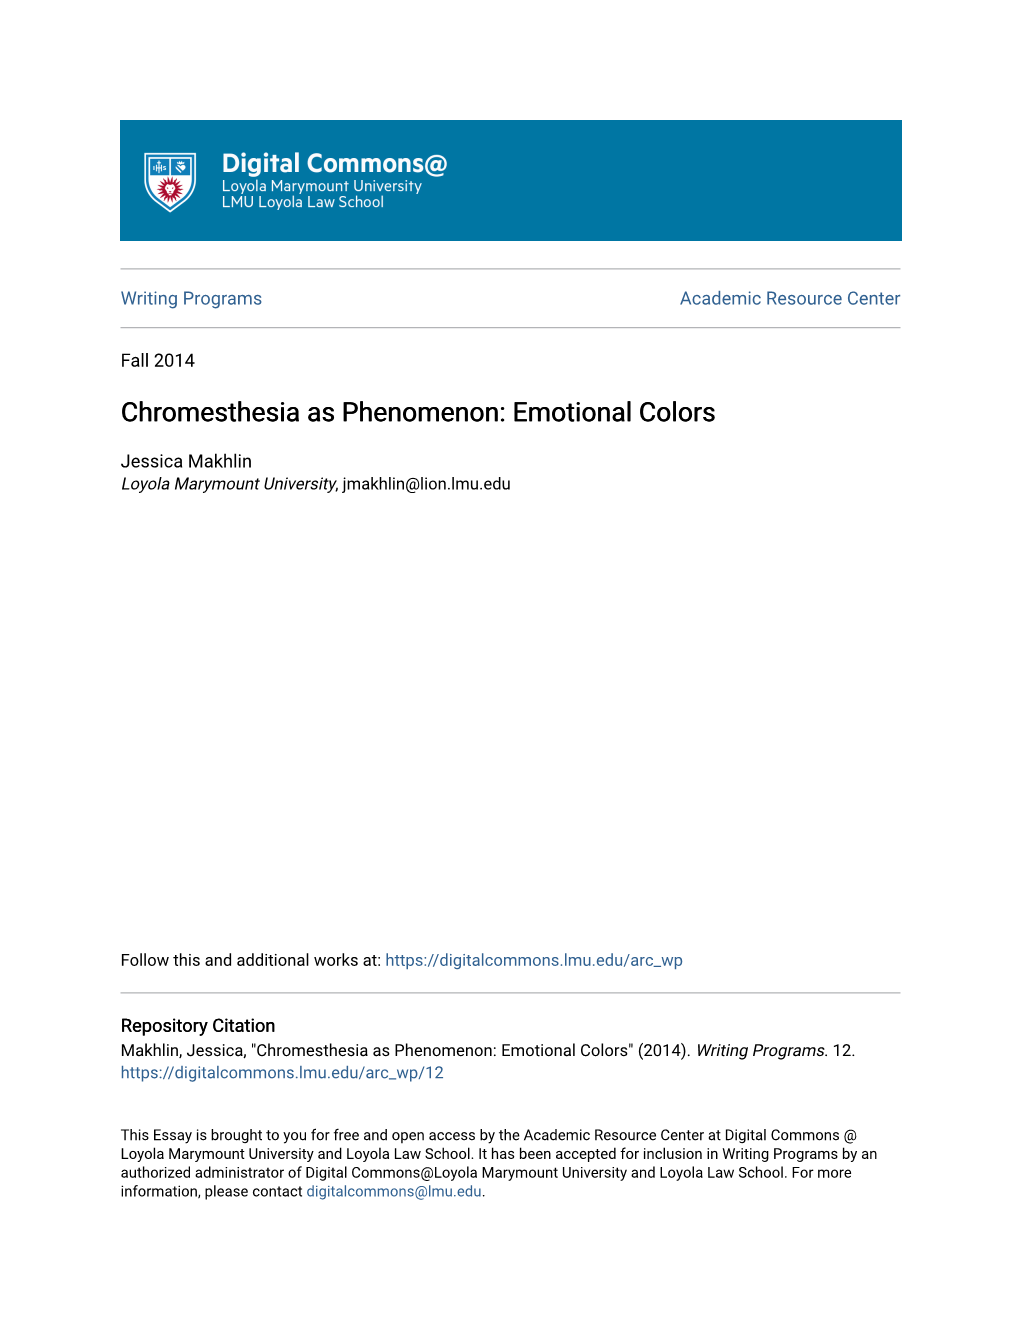 Chromesthesia As Phenomenon: Emotional Colors